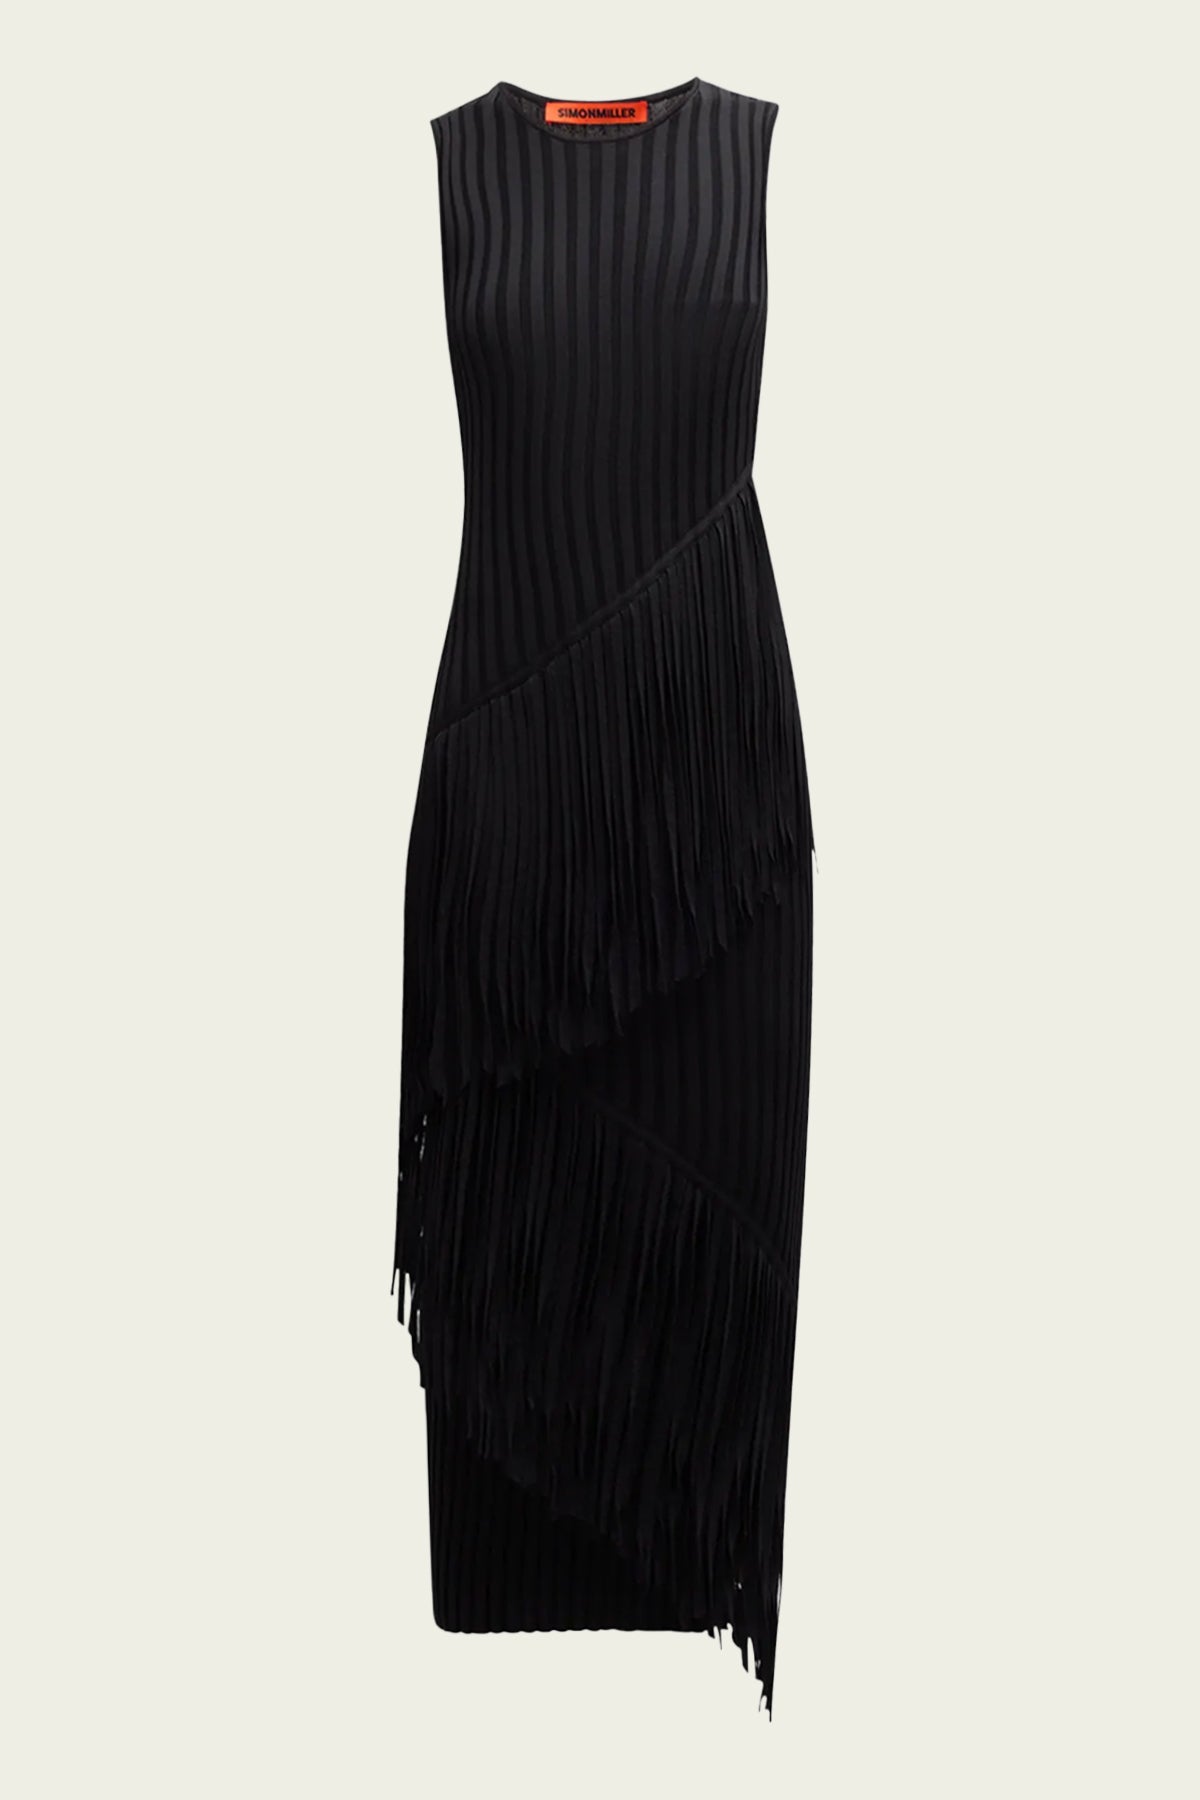 Spiral Knit Dress in Black - shop - olivia.com